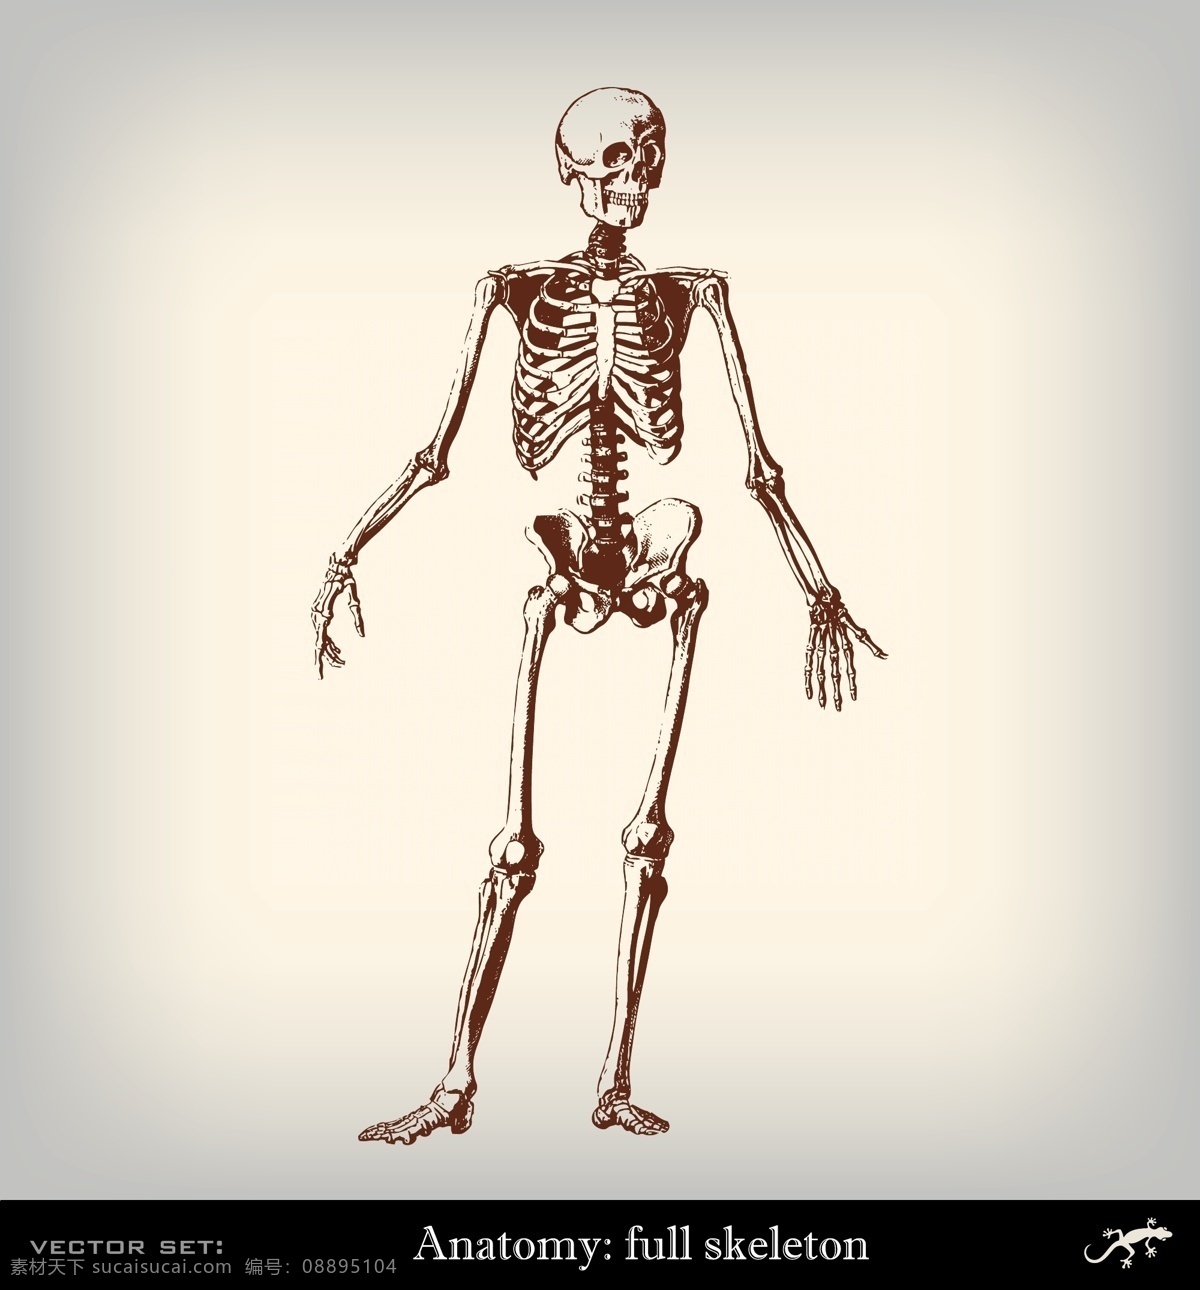 肌肉 手 器官 手绘 素描 矢量 脚 医疗素材 插画 骨头 铅笔画 研究素描 人物结构